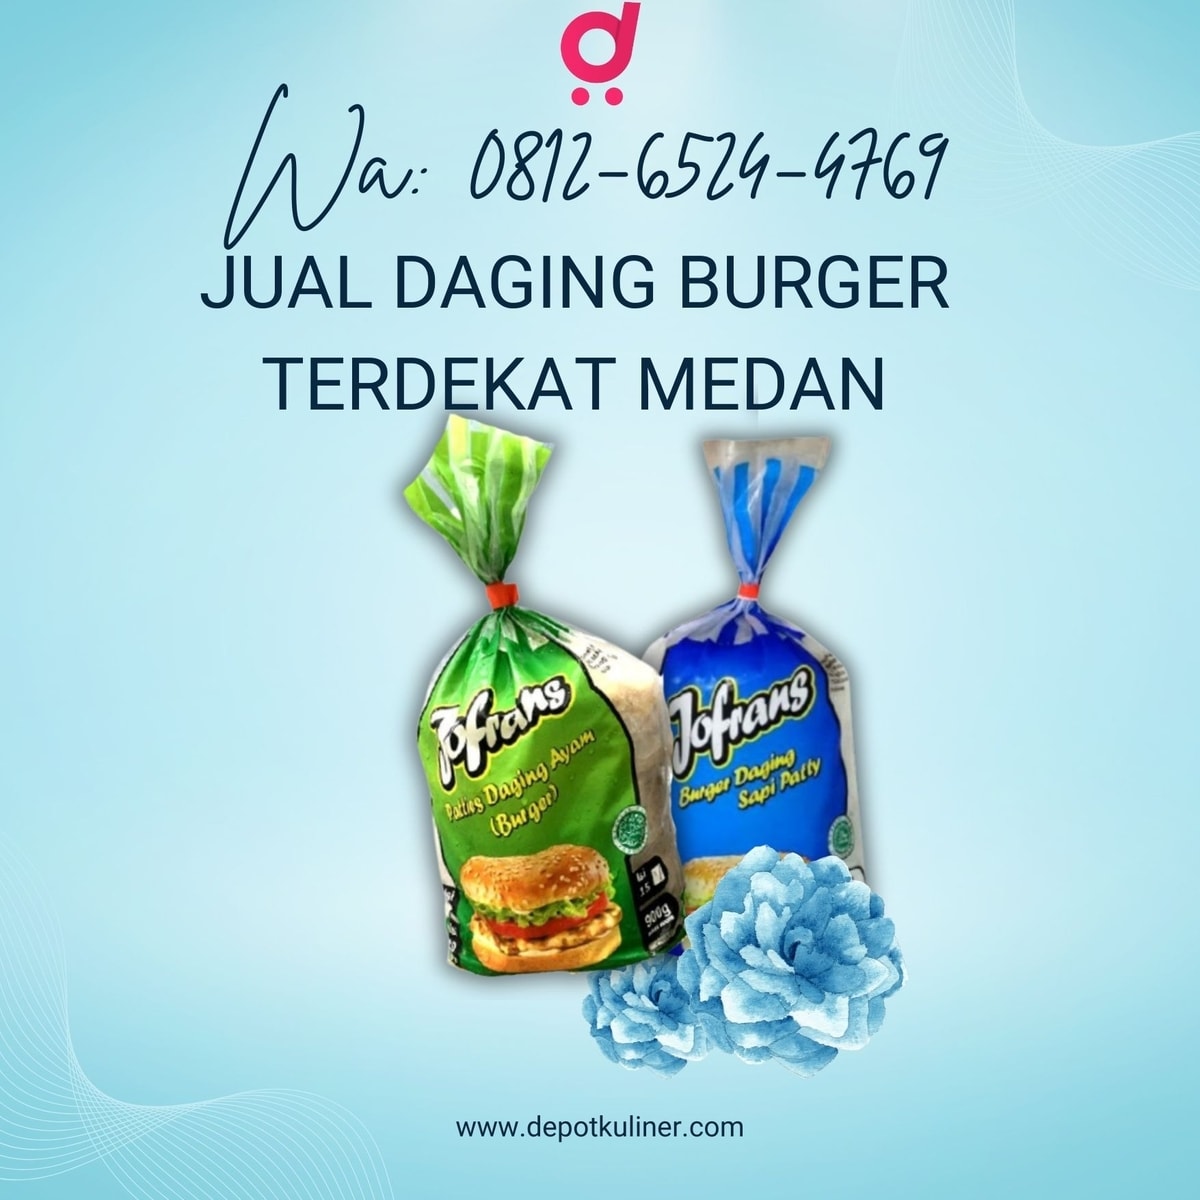 MURAH BERKUALITAS, Call 0812-6524-4769, Jual Daging Burger Terdekat Medan